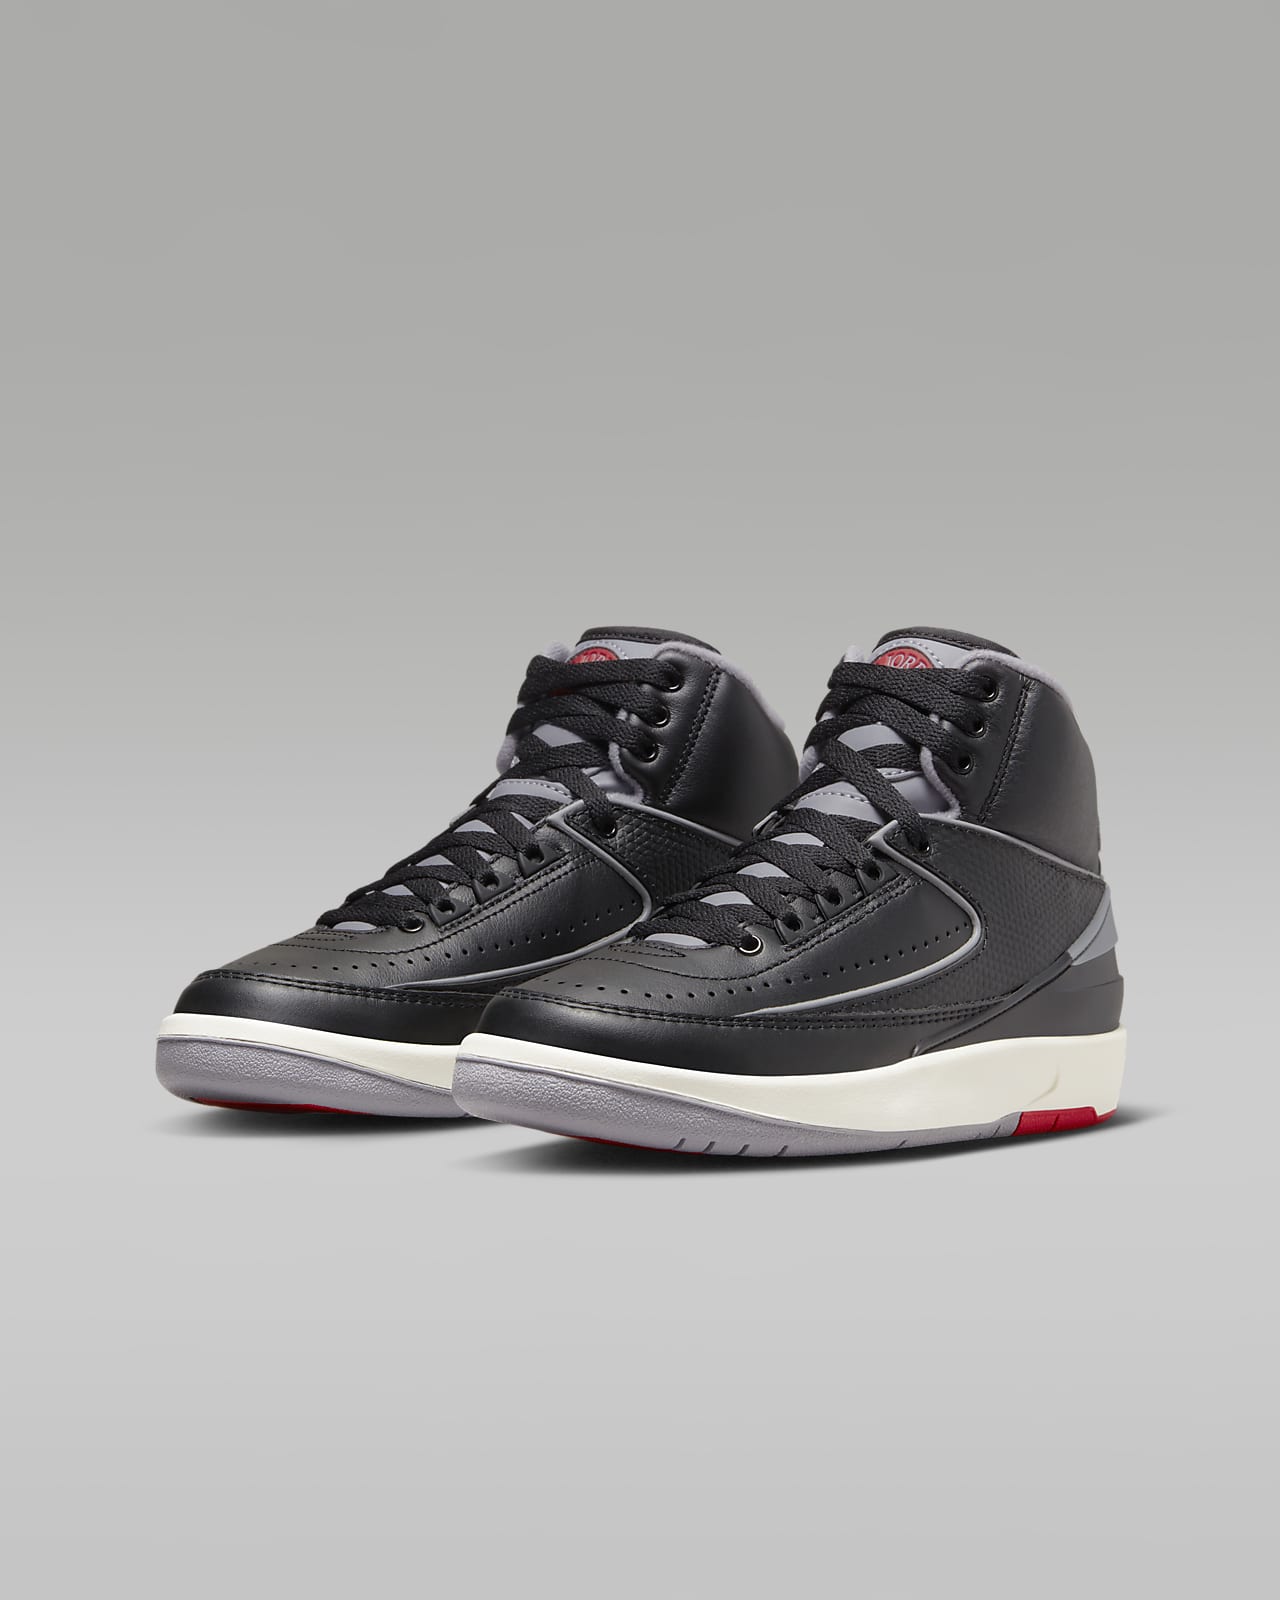 Air Jordan 2 Retro Older Kids' Shoes. Nike LU